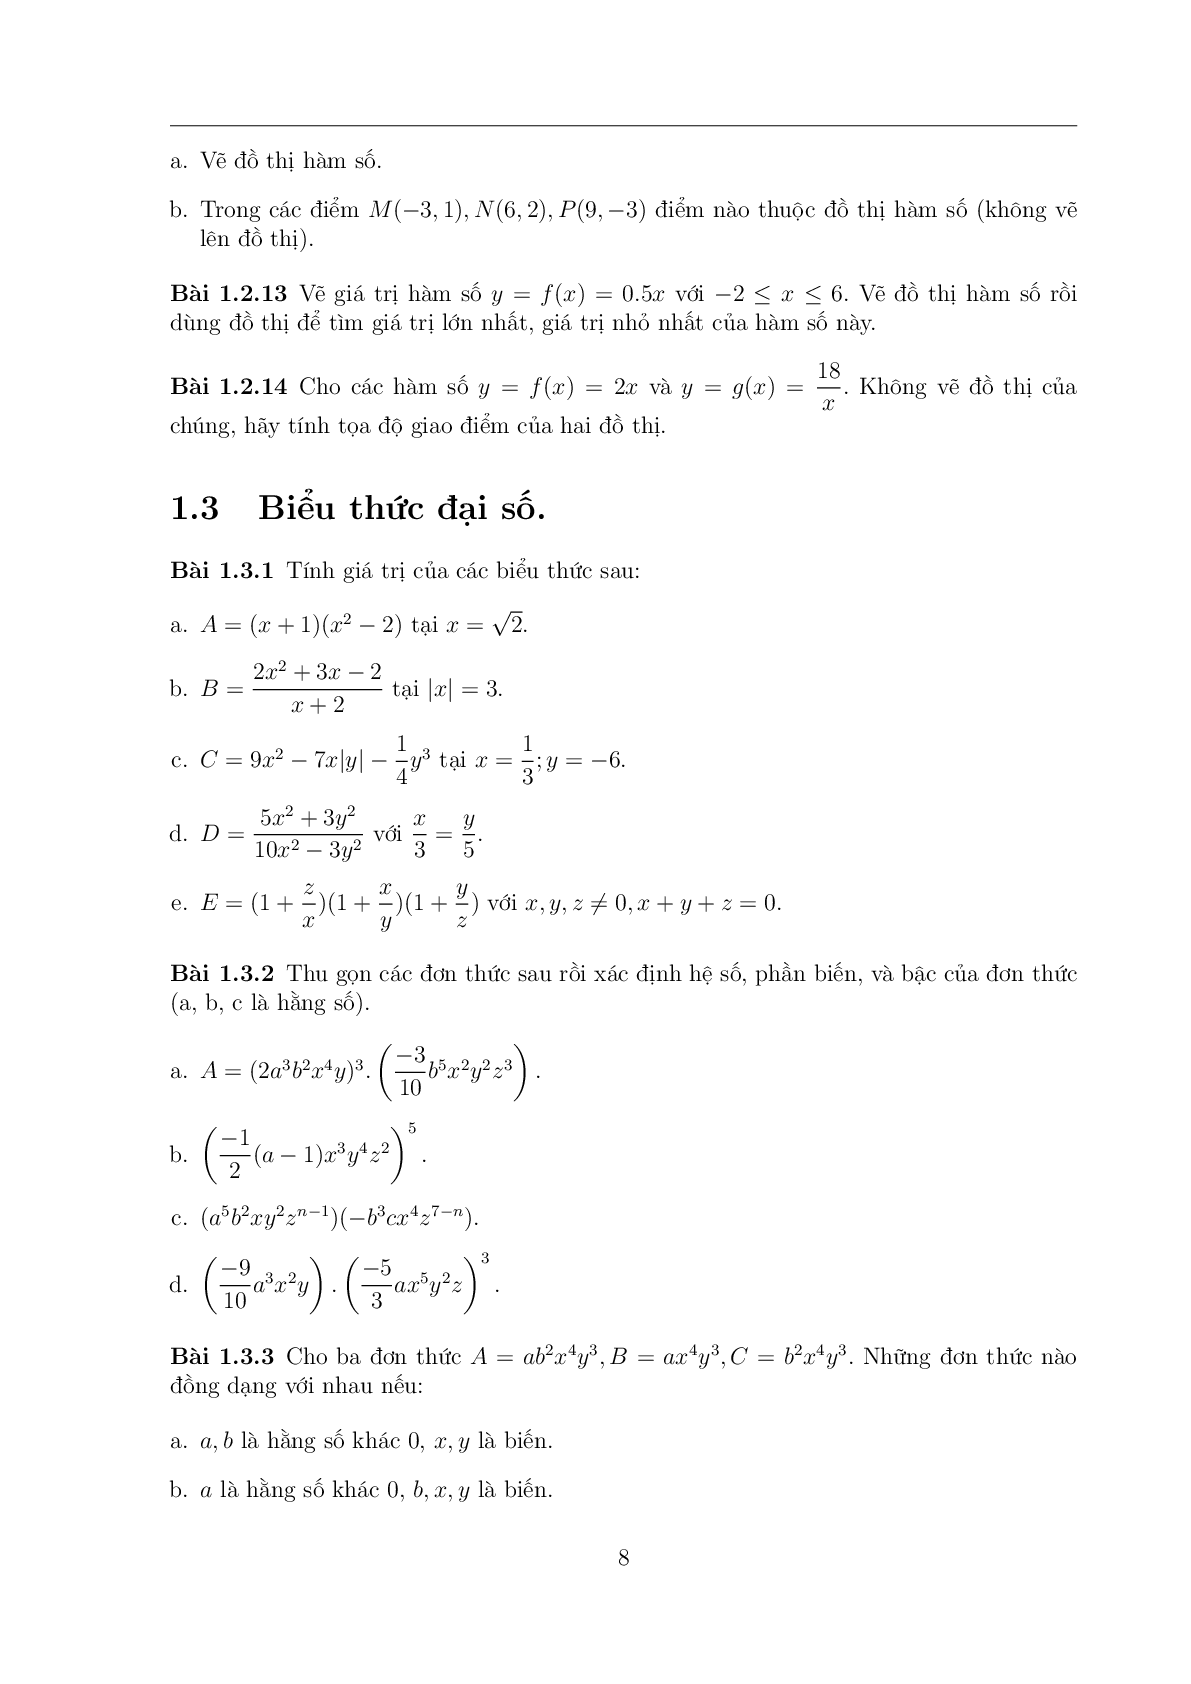 108 Bài toán chọn lọc Toán 7 có đáp án (trang 7)